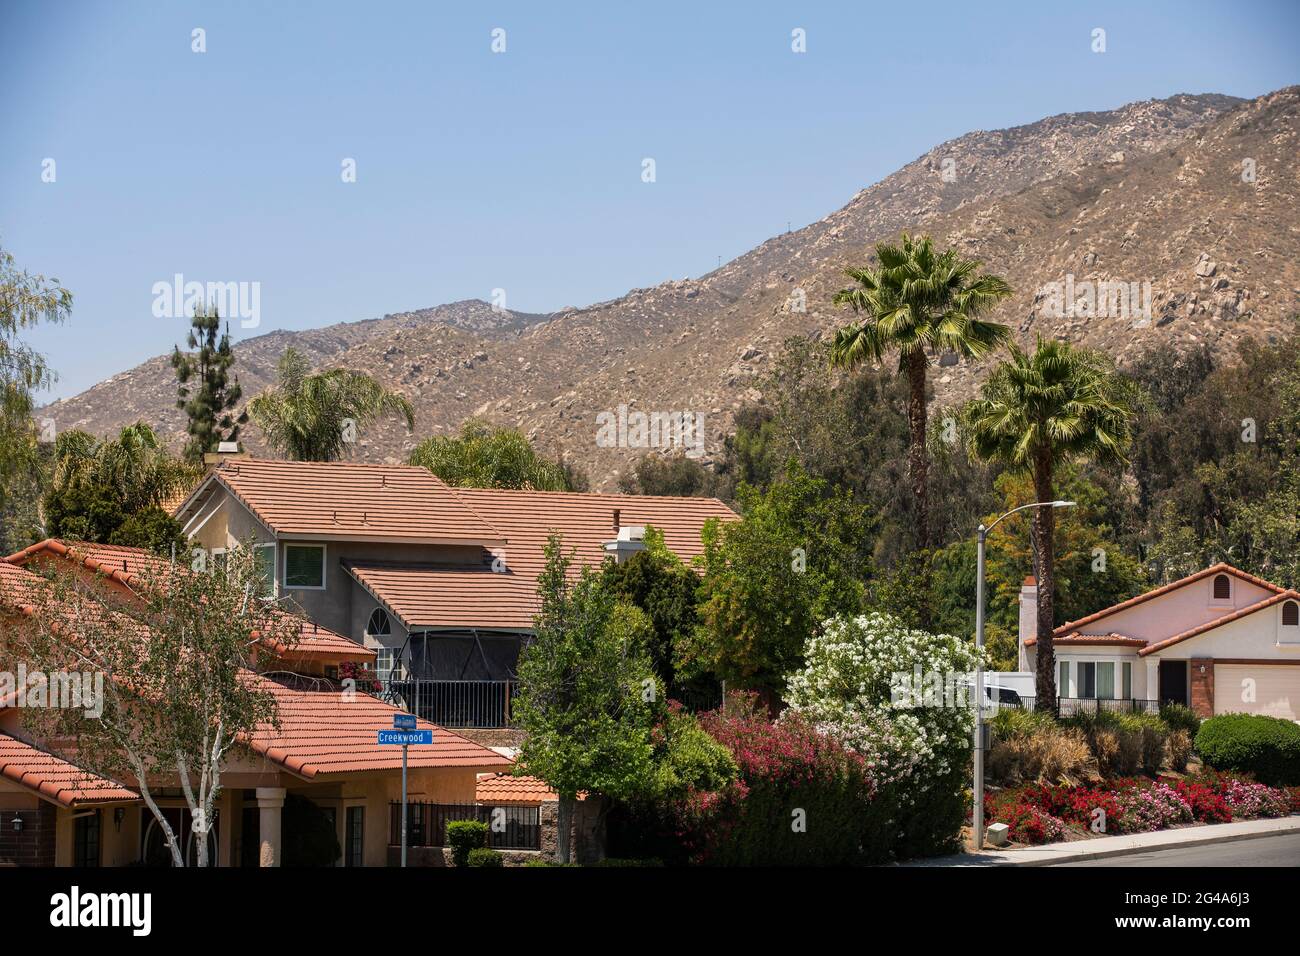 Vue de jour d'un quartier de banlieue de Moreno Valley, Californie, États-Unis. Banque D'Images